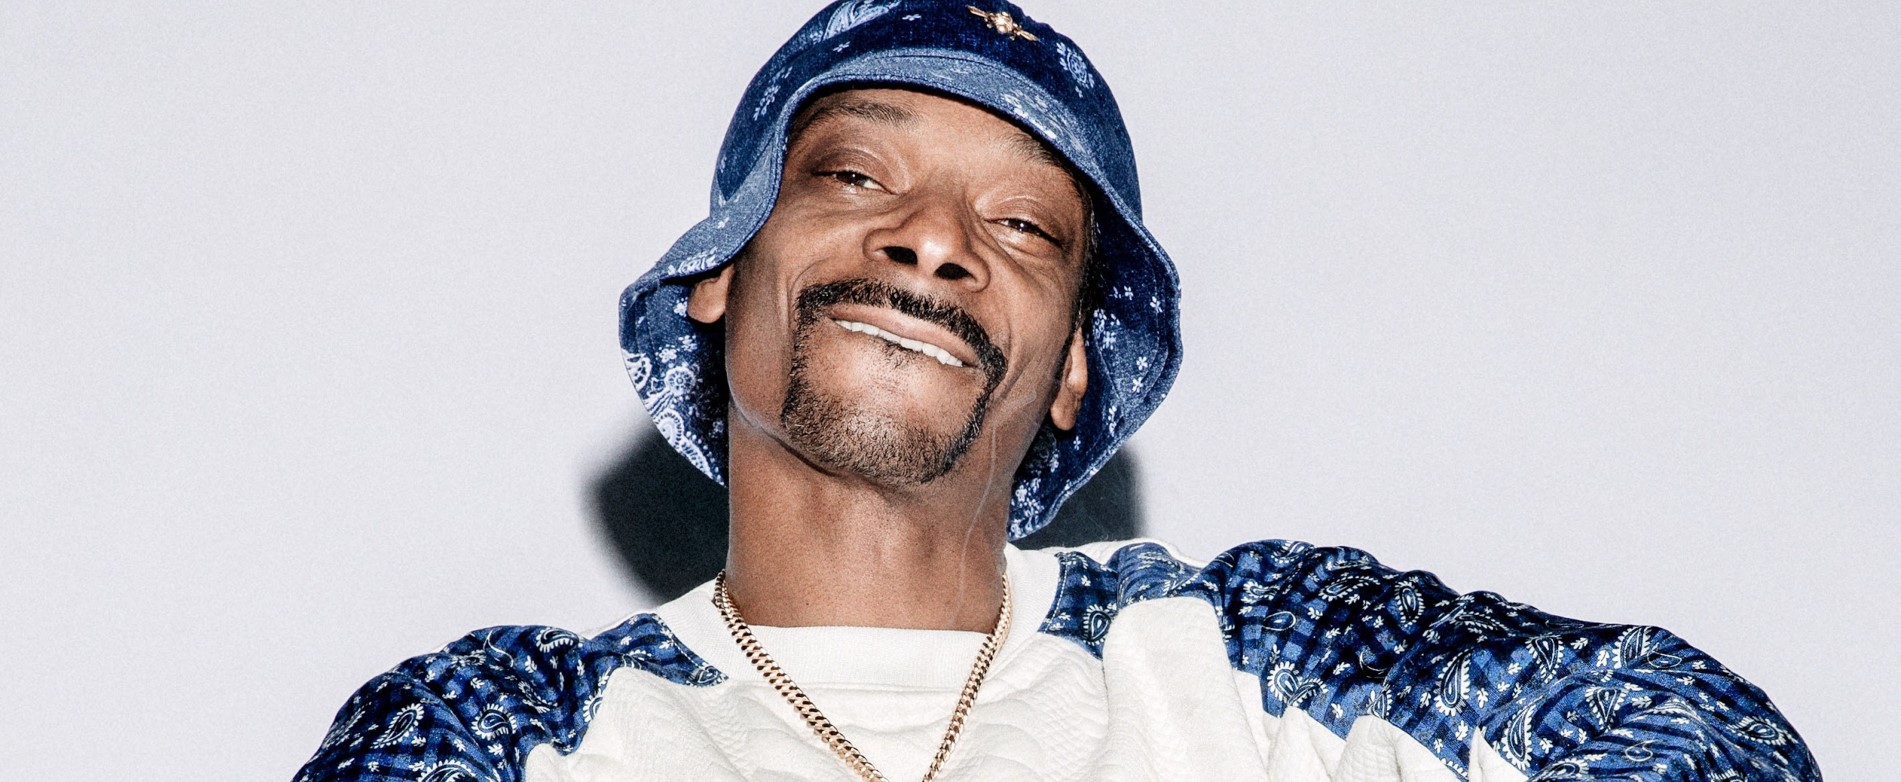 Snoop Dogg bio